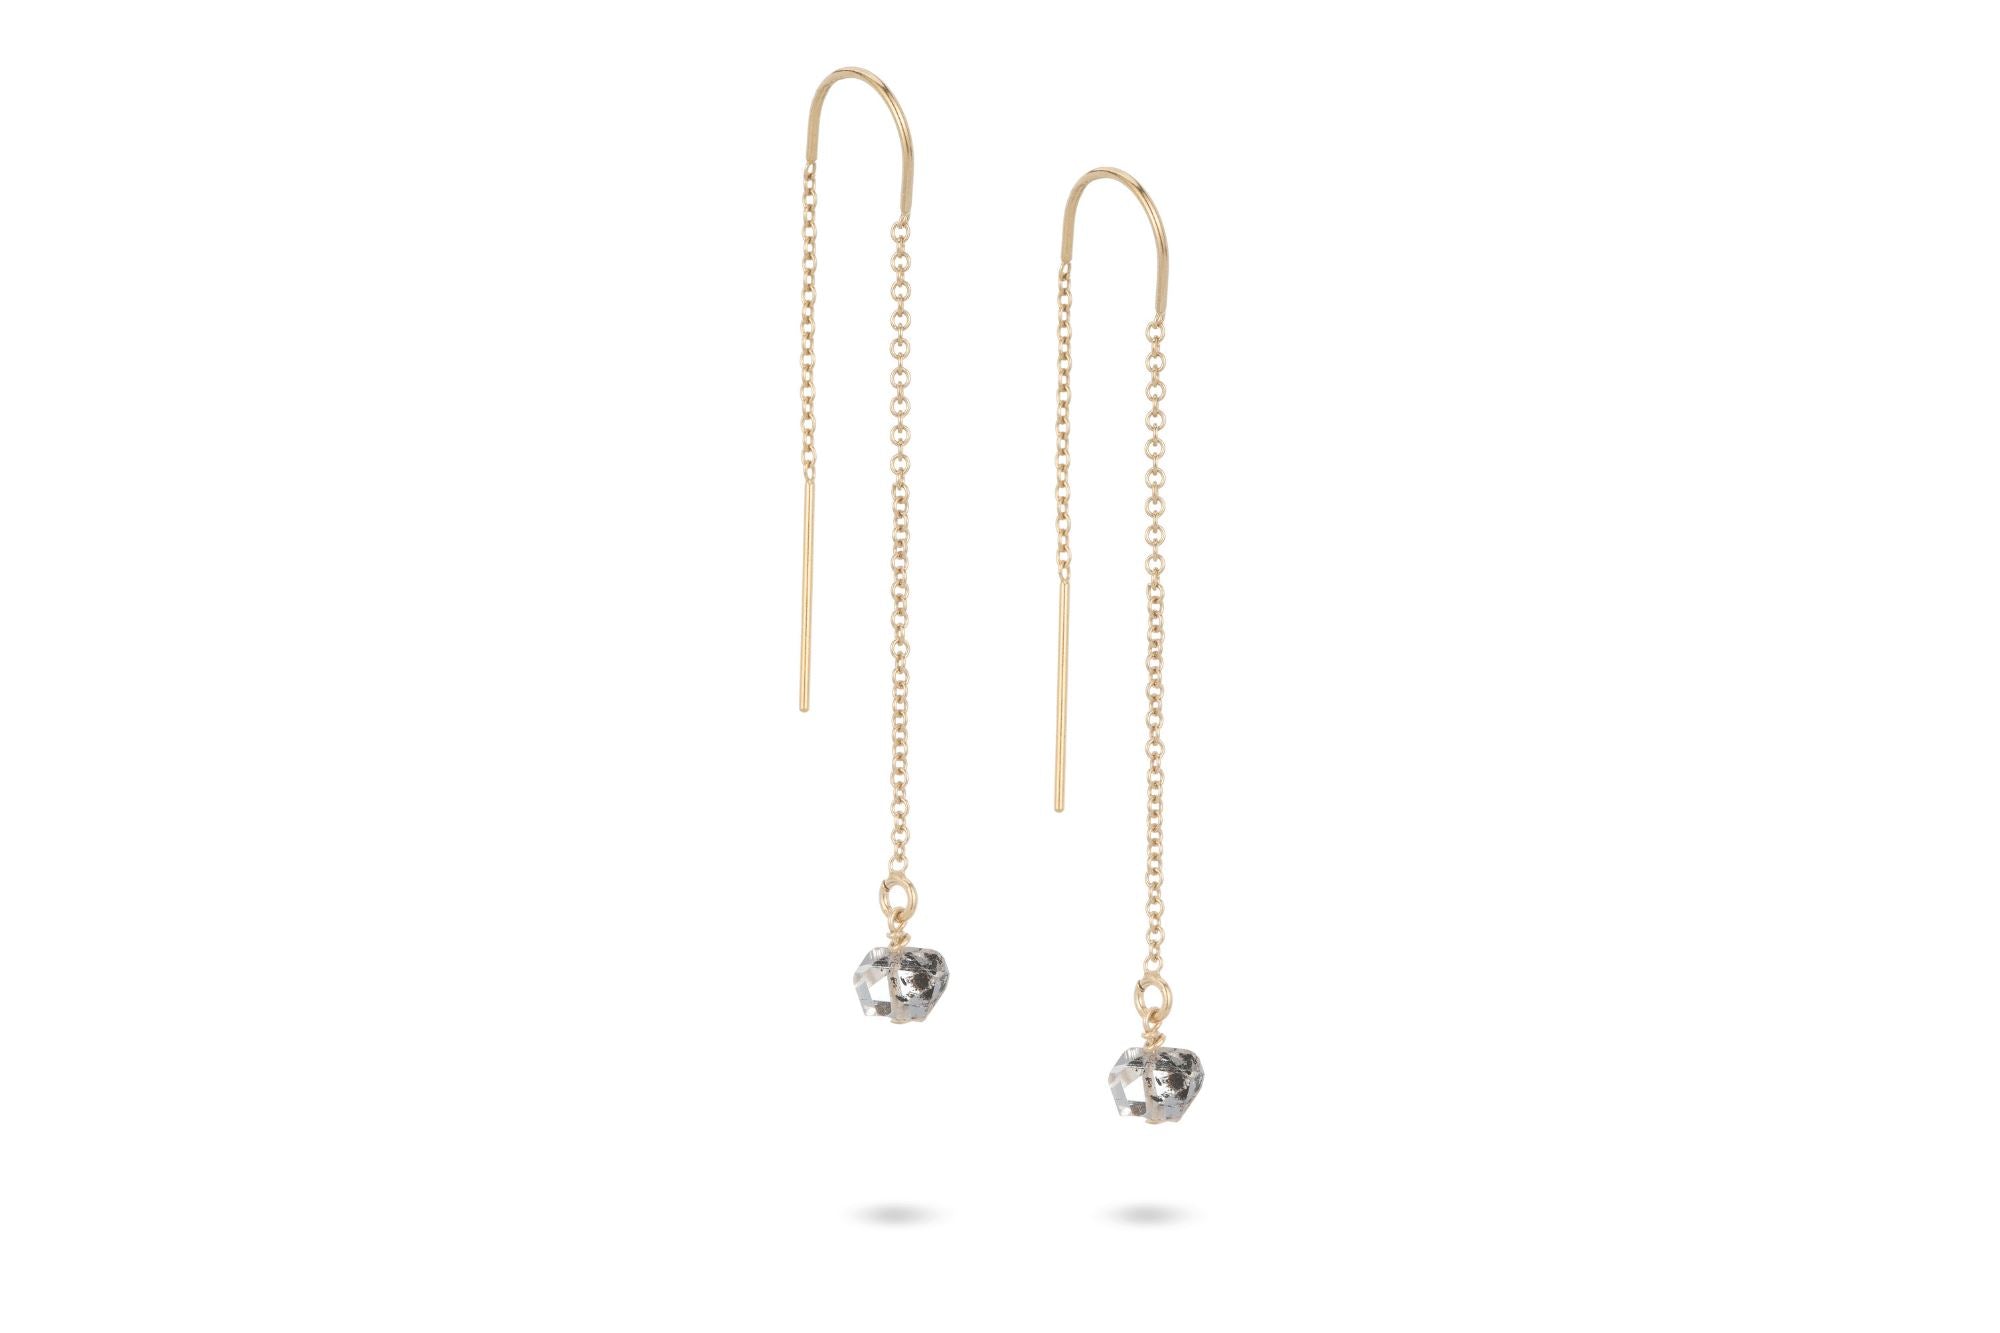 Gold Threader Earrings - Long Chain Earrings 14K Gold Filled